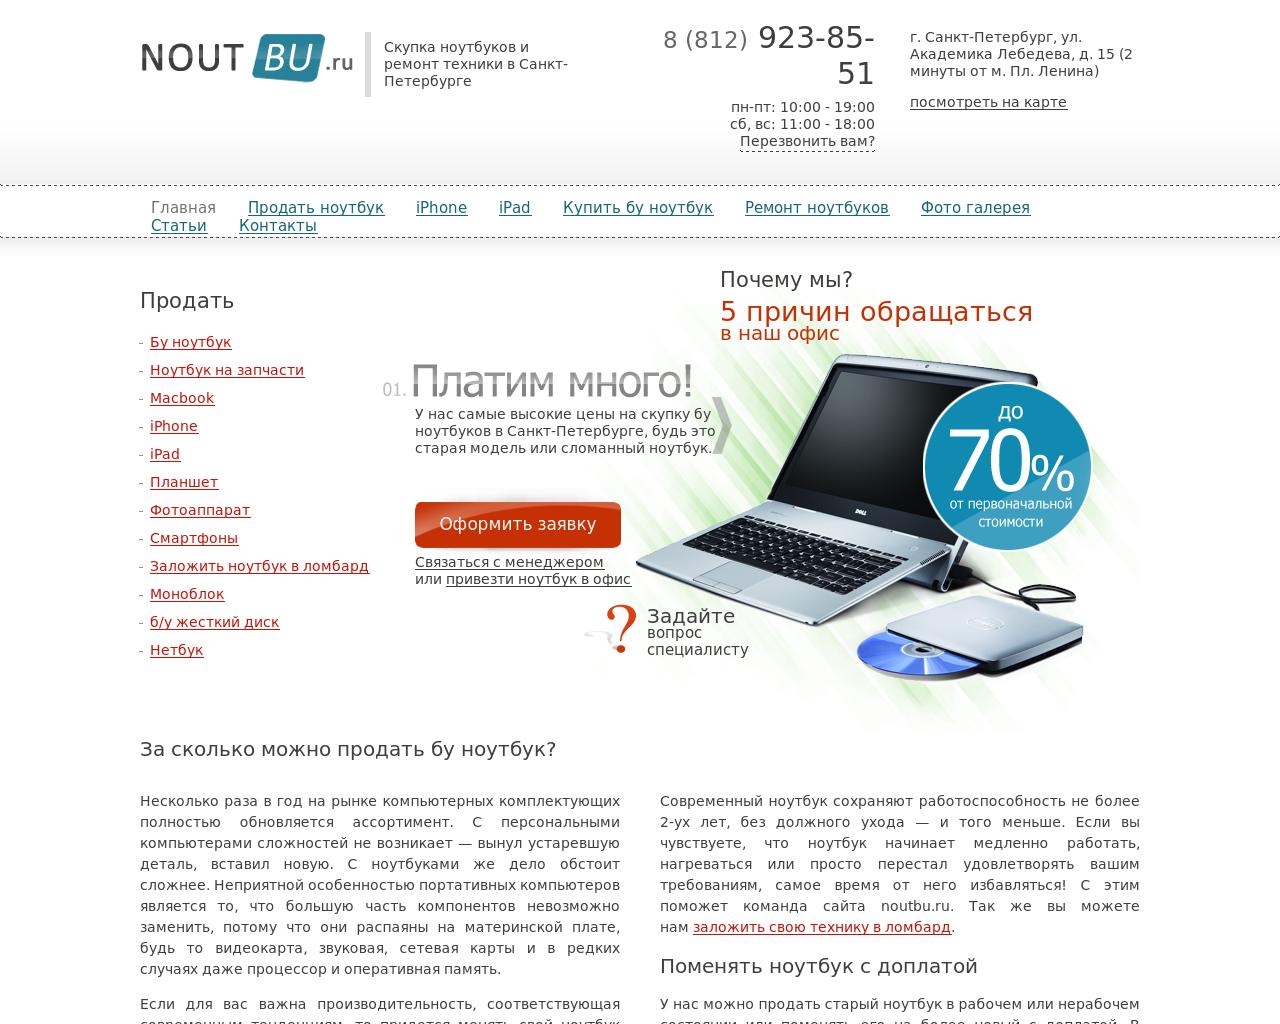 Изображение сайта noutbu.ru в разрешении 1280x1024